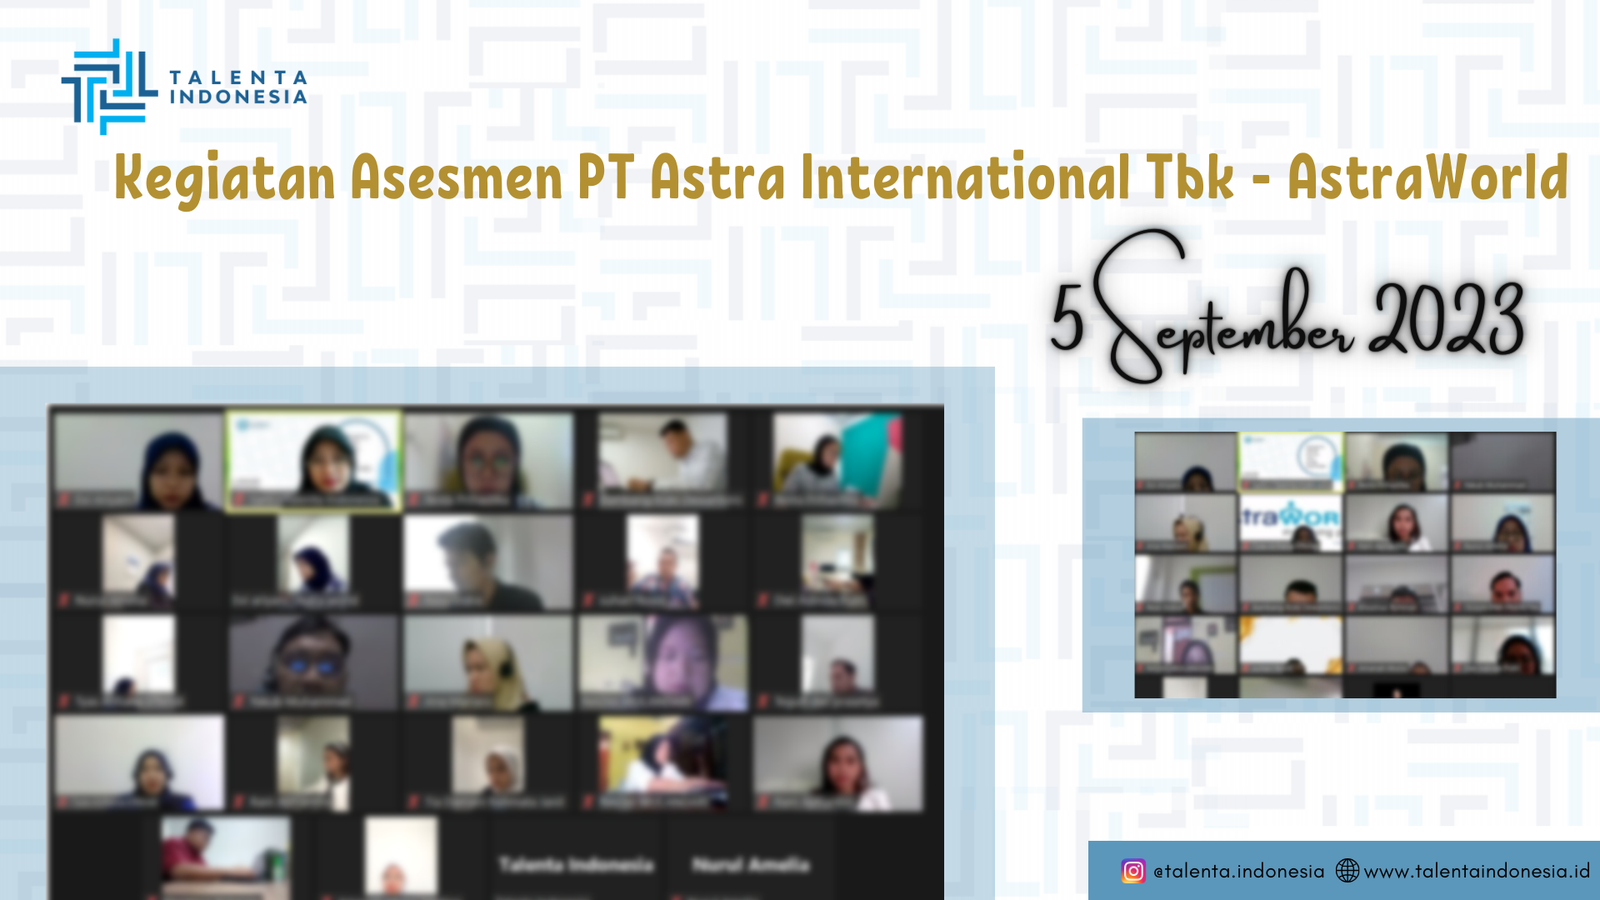 Assessment PT Astra International Tbk - Astraworld